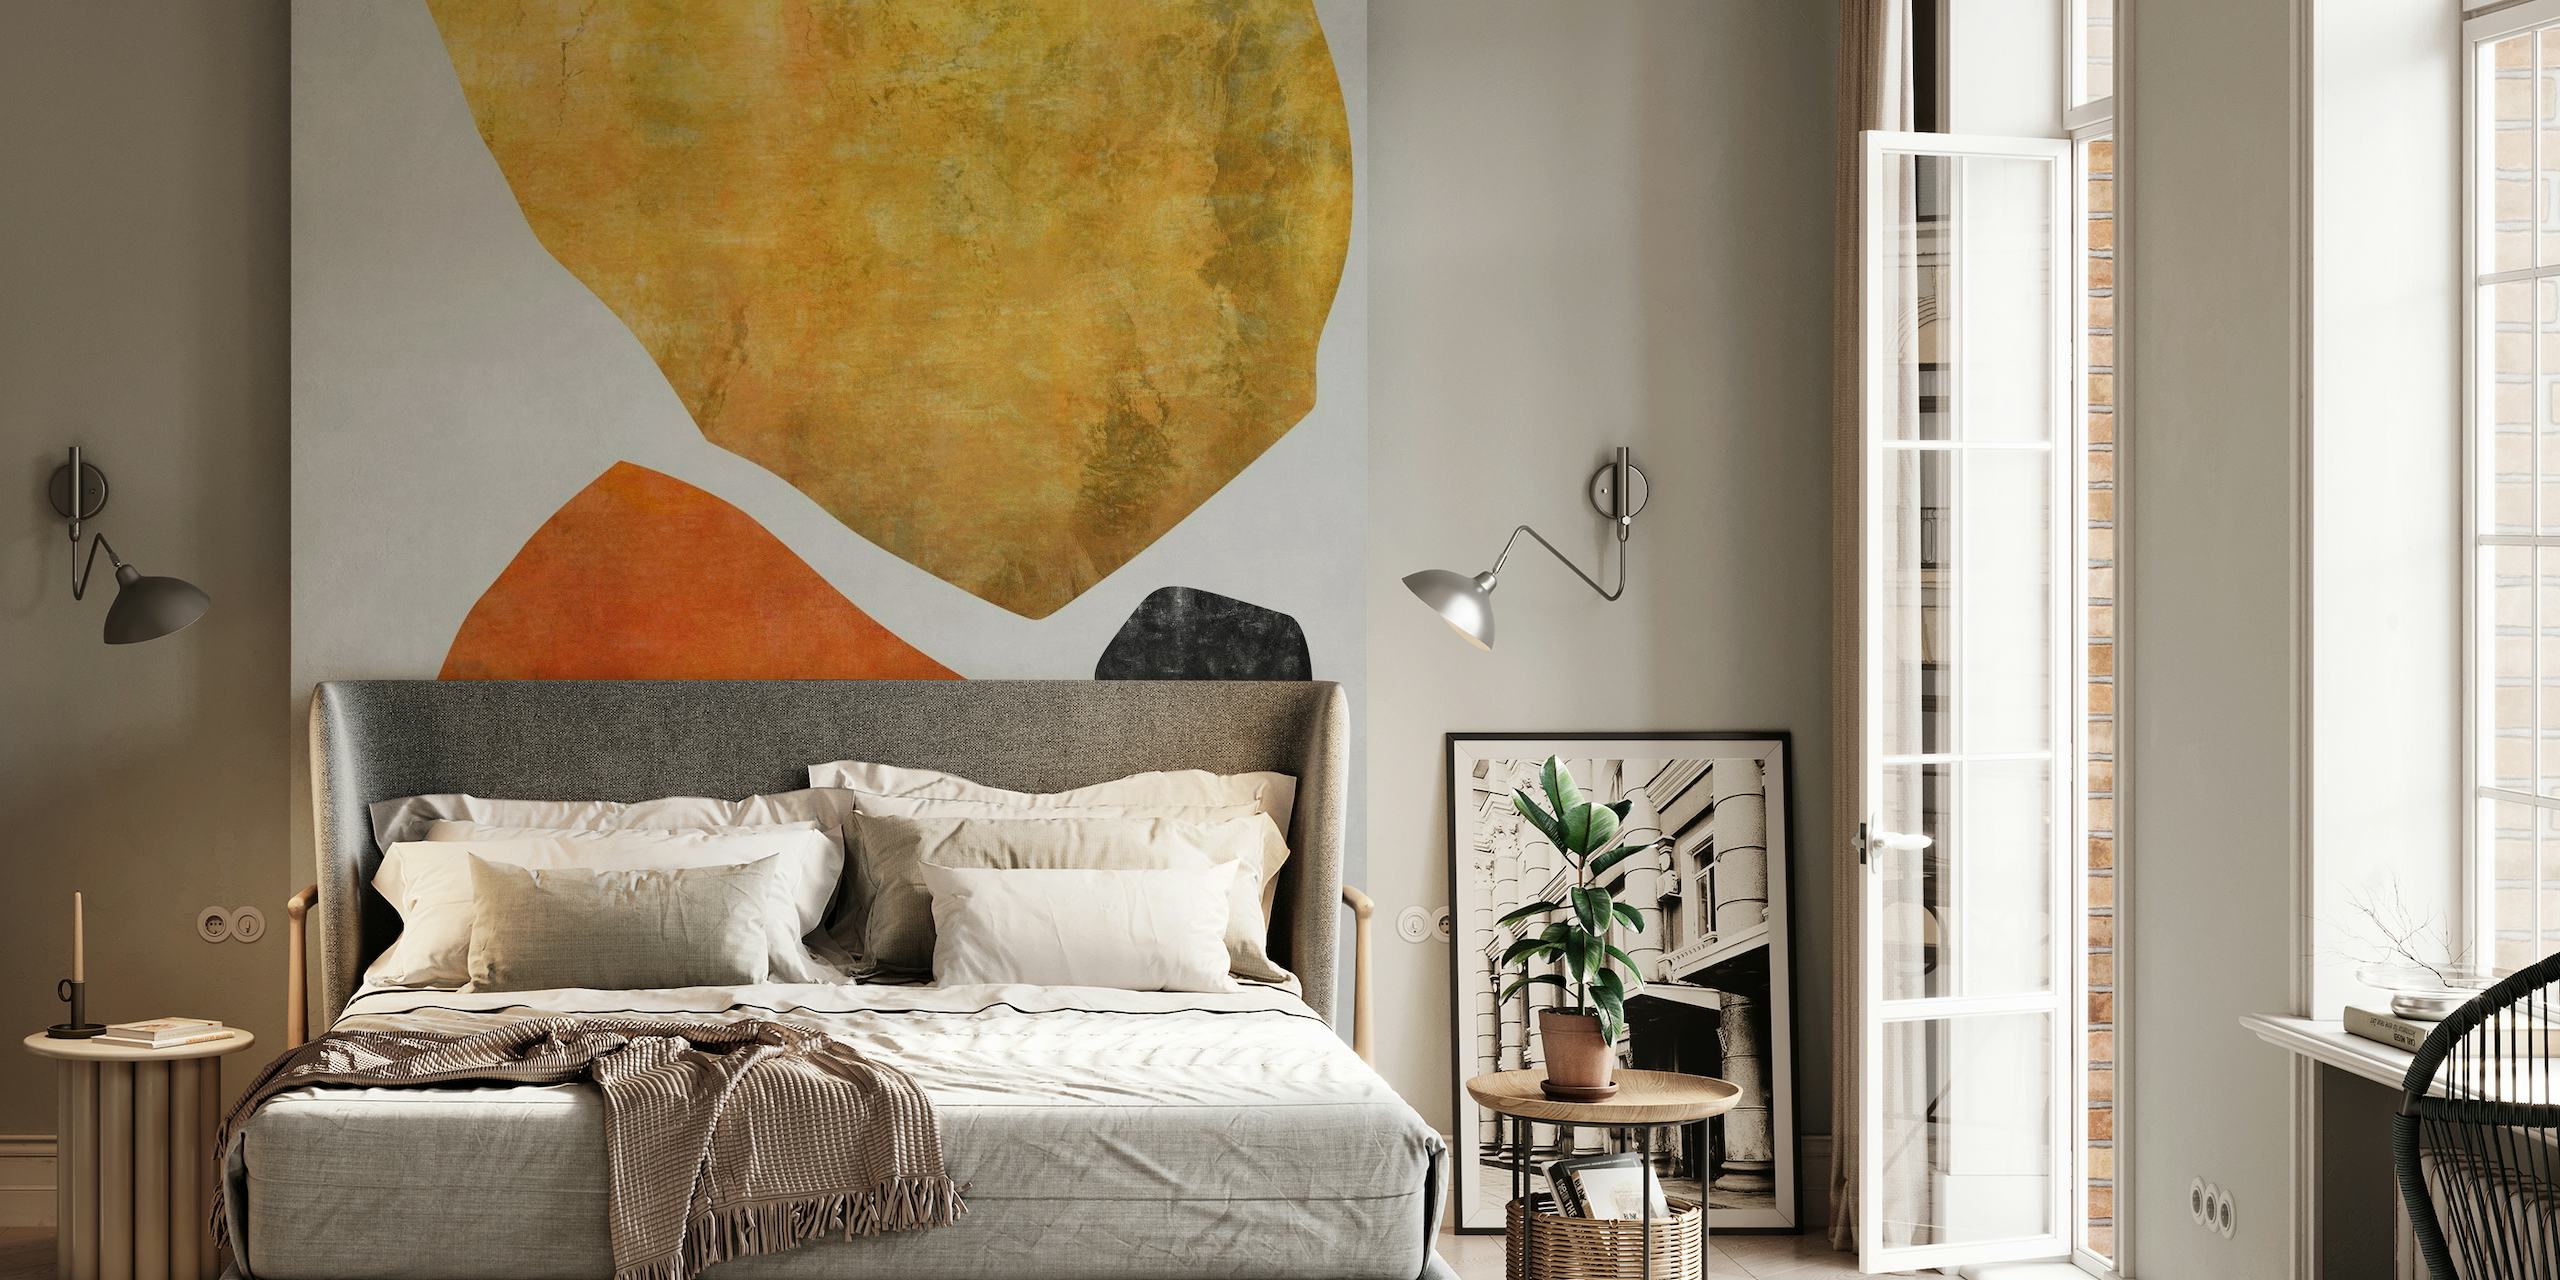 Abstrakt vægmaleri Organic Shapes 10 med jordfarver og minimalistisk design